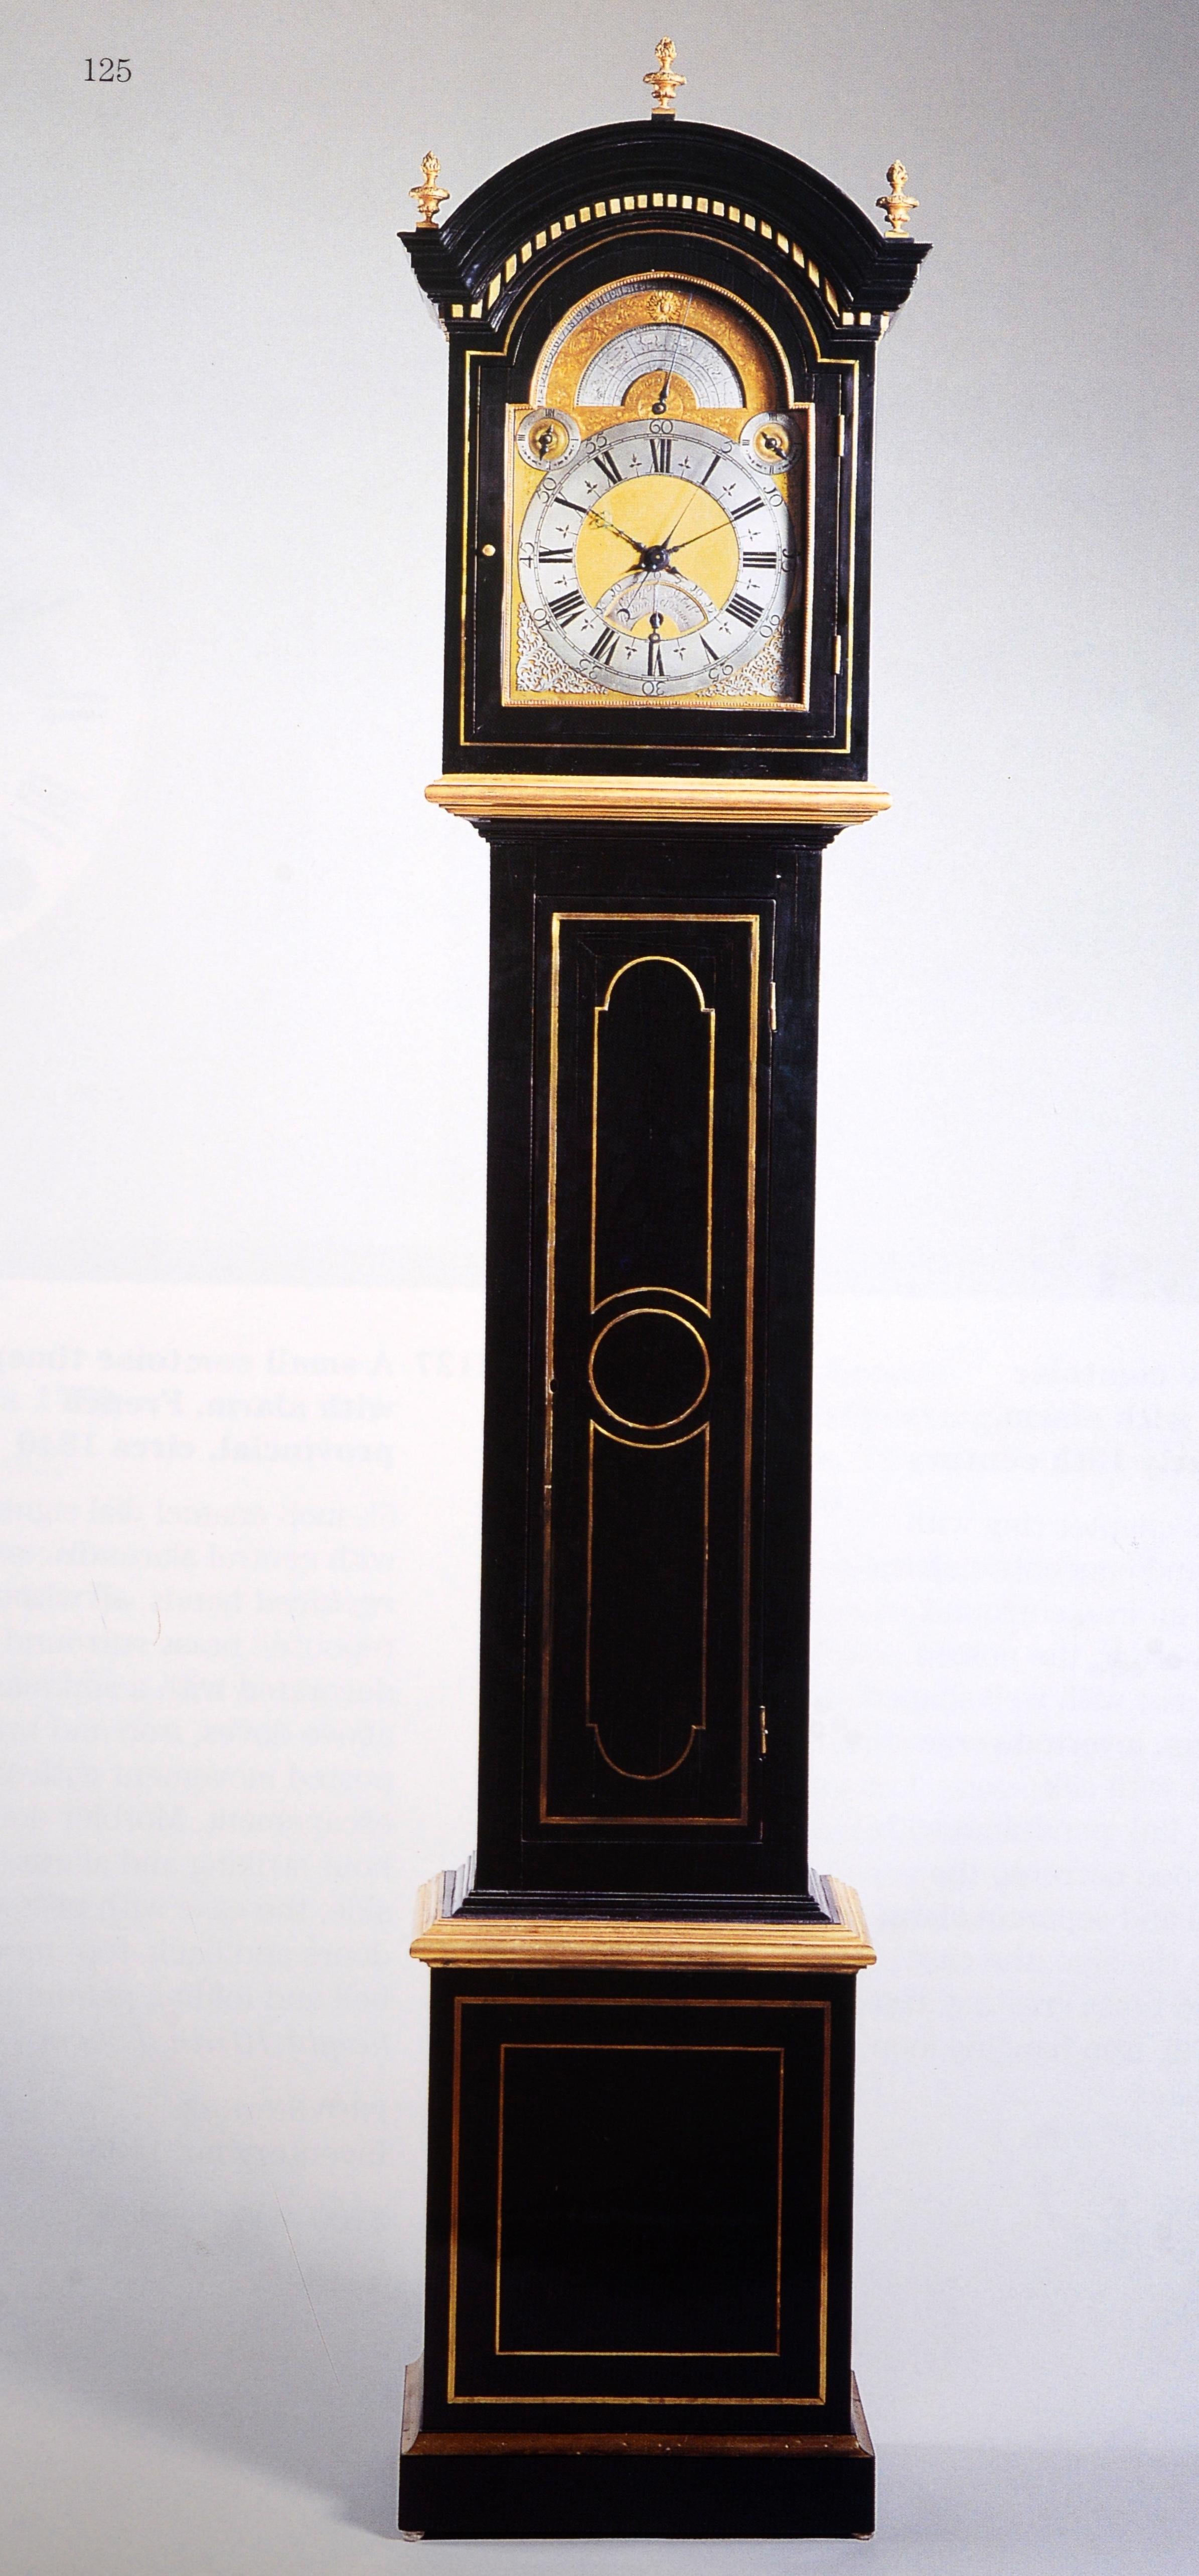 Collection d'horloges de justice Warren Shepro : Sotheby's NY, 26 avril 2001, 1ère édition en vente 2